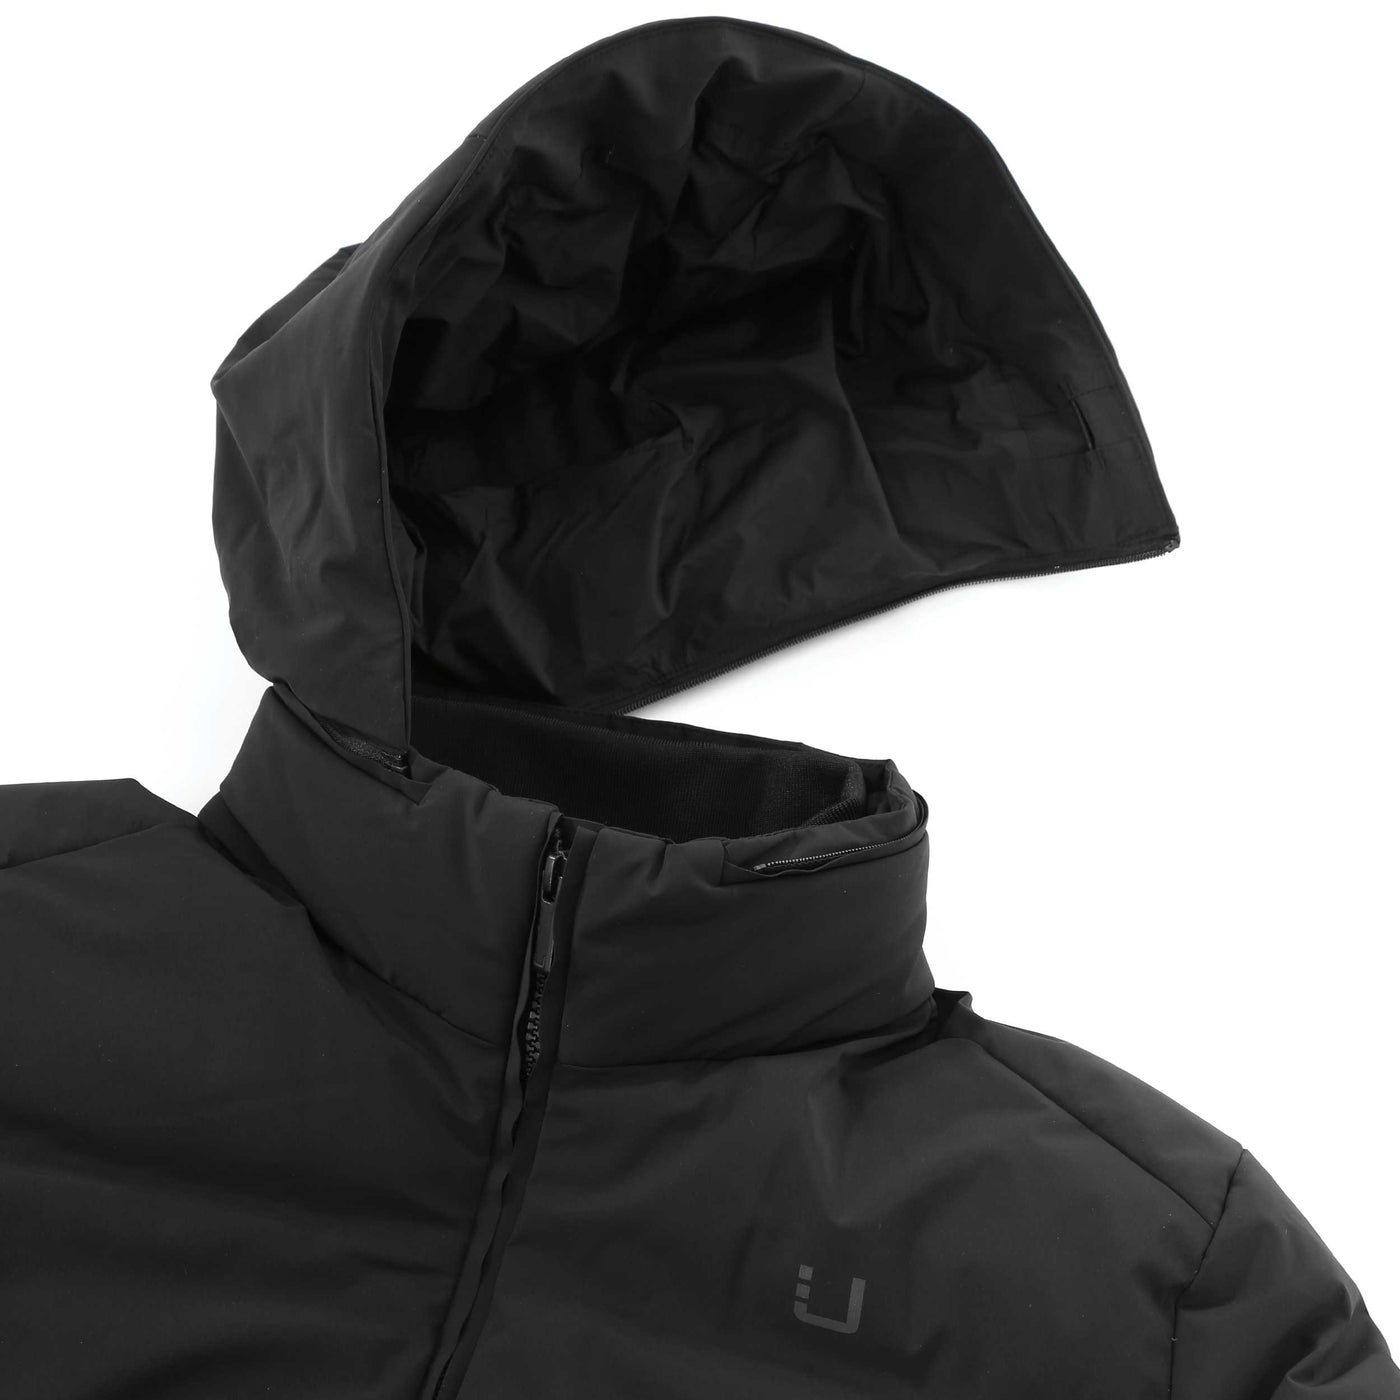 UBR Bolt Jacket in Black Removable Hood